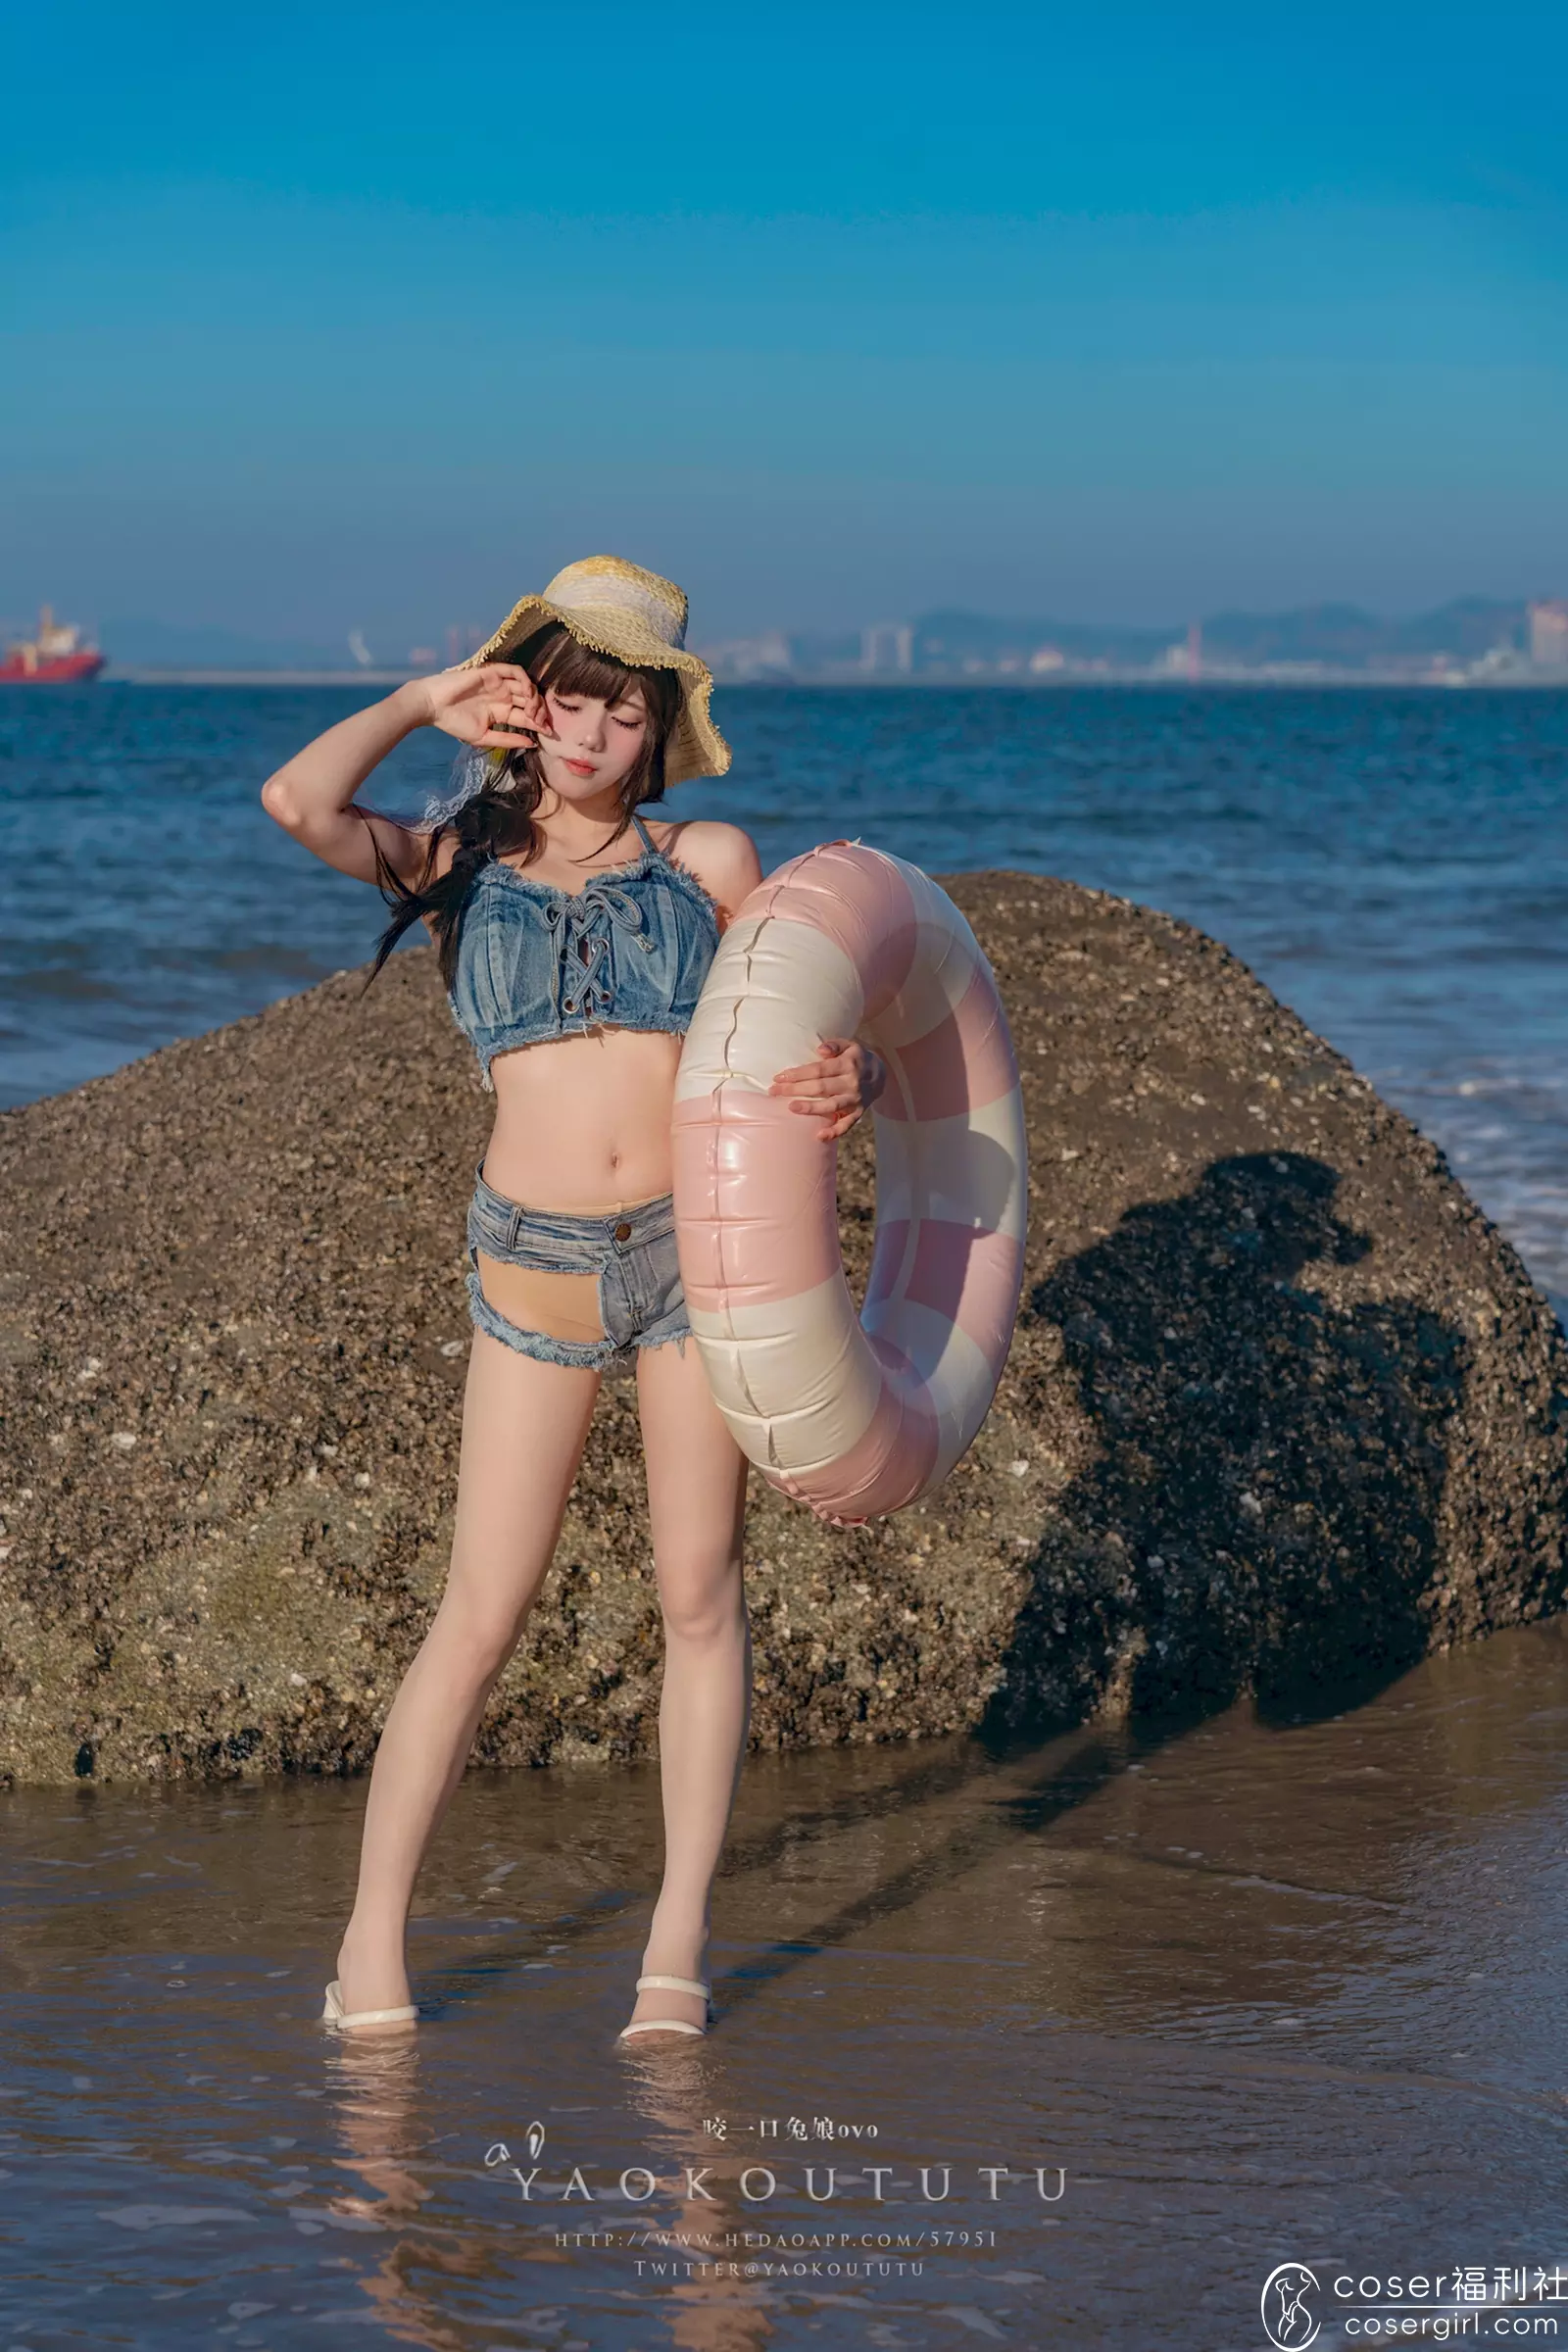 黏黏团子兔 海の夏日&Shotgun 美女写真图片在线欣赏-coser福利社